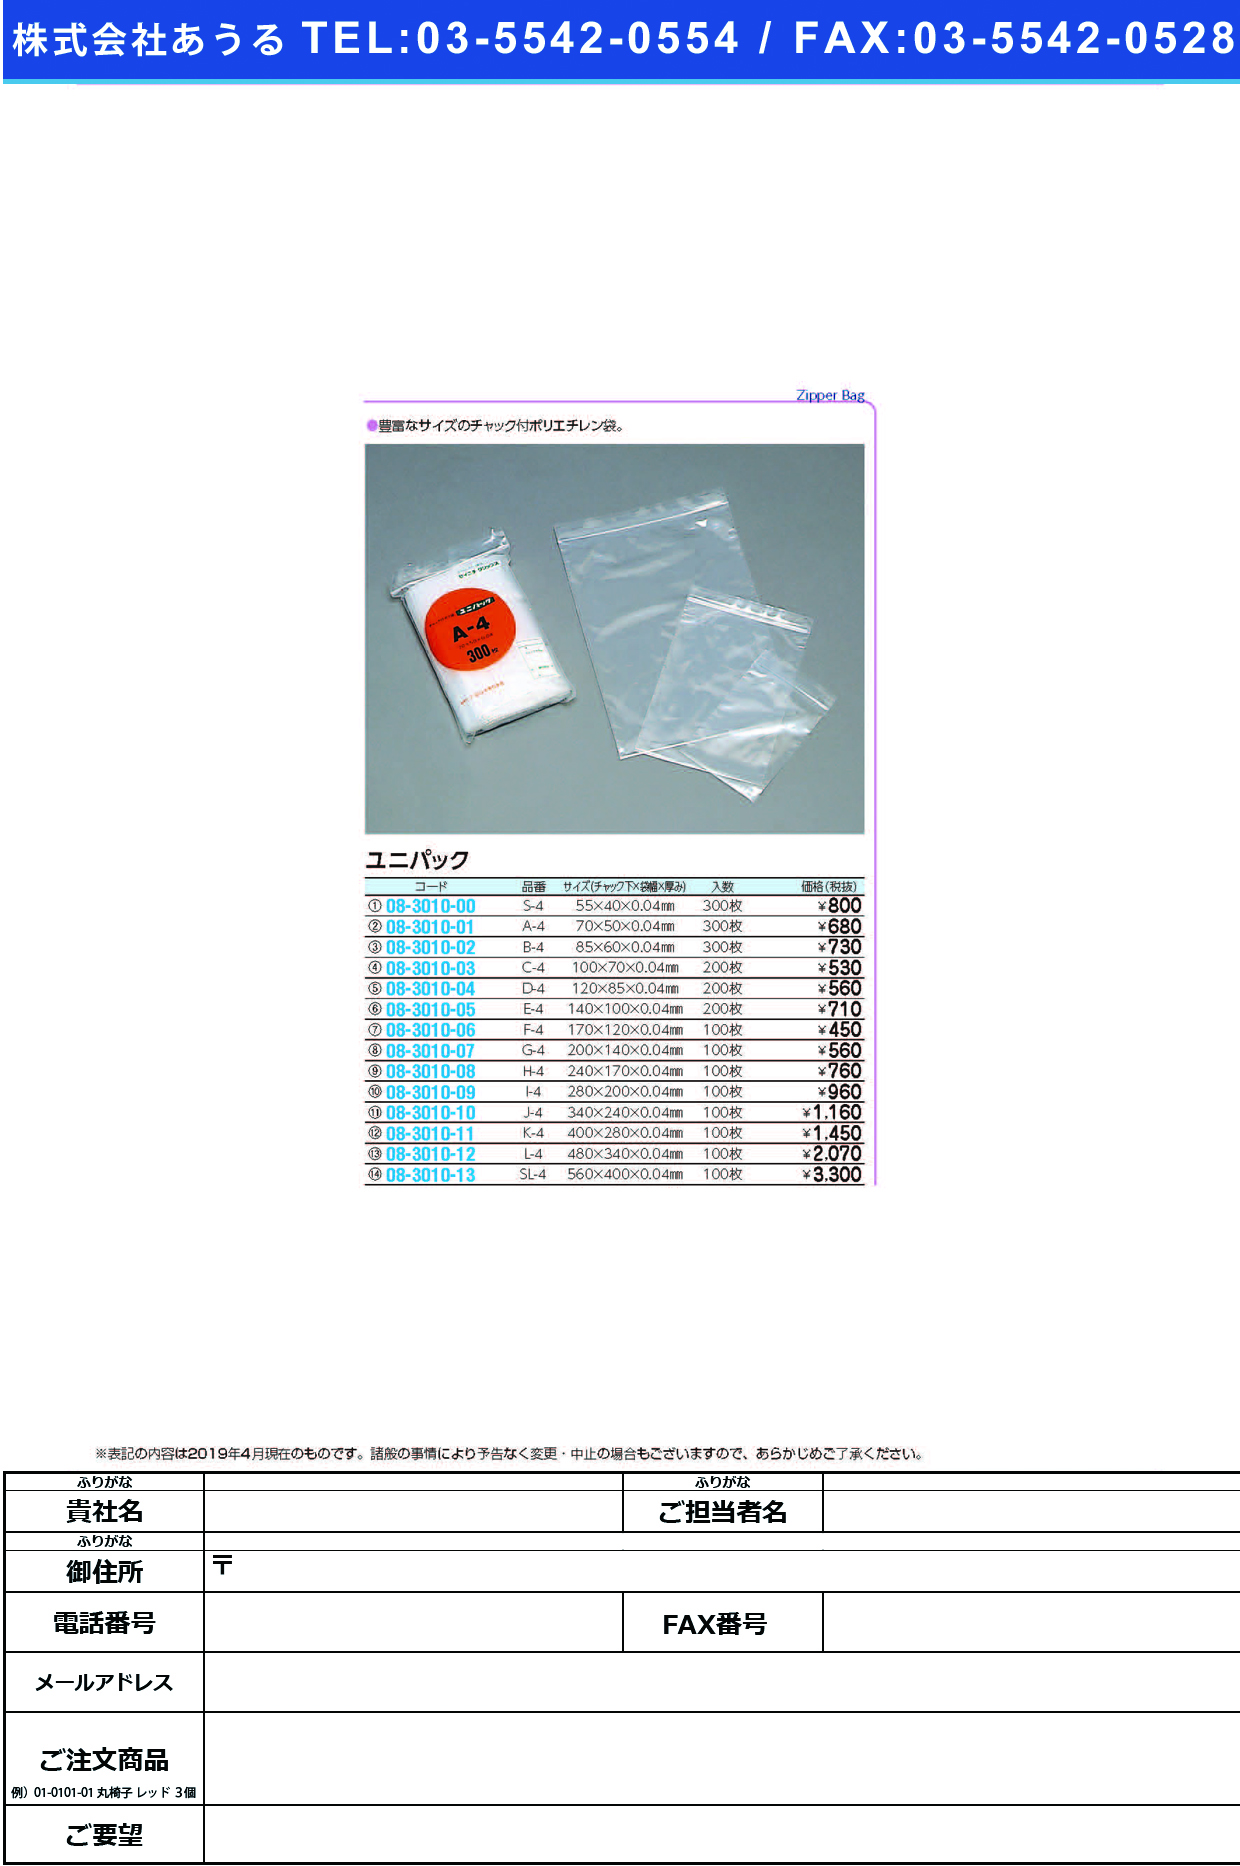 (08-3010-09)ユニパック I-4(280X200MM)100ﾏｲ ﾕﾆﾊﾟｯｸ【1袋単位】【2019年カタログ商品】